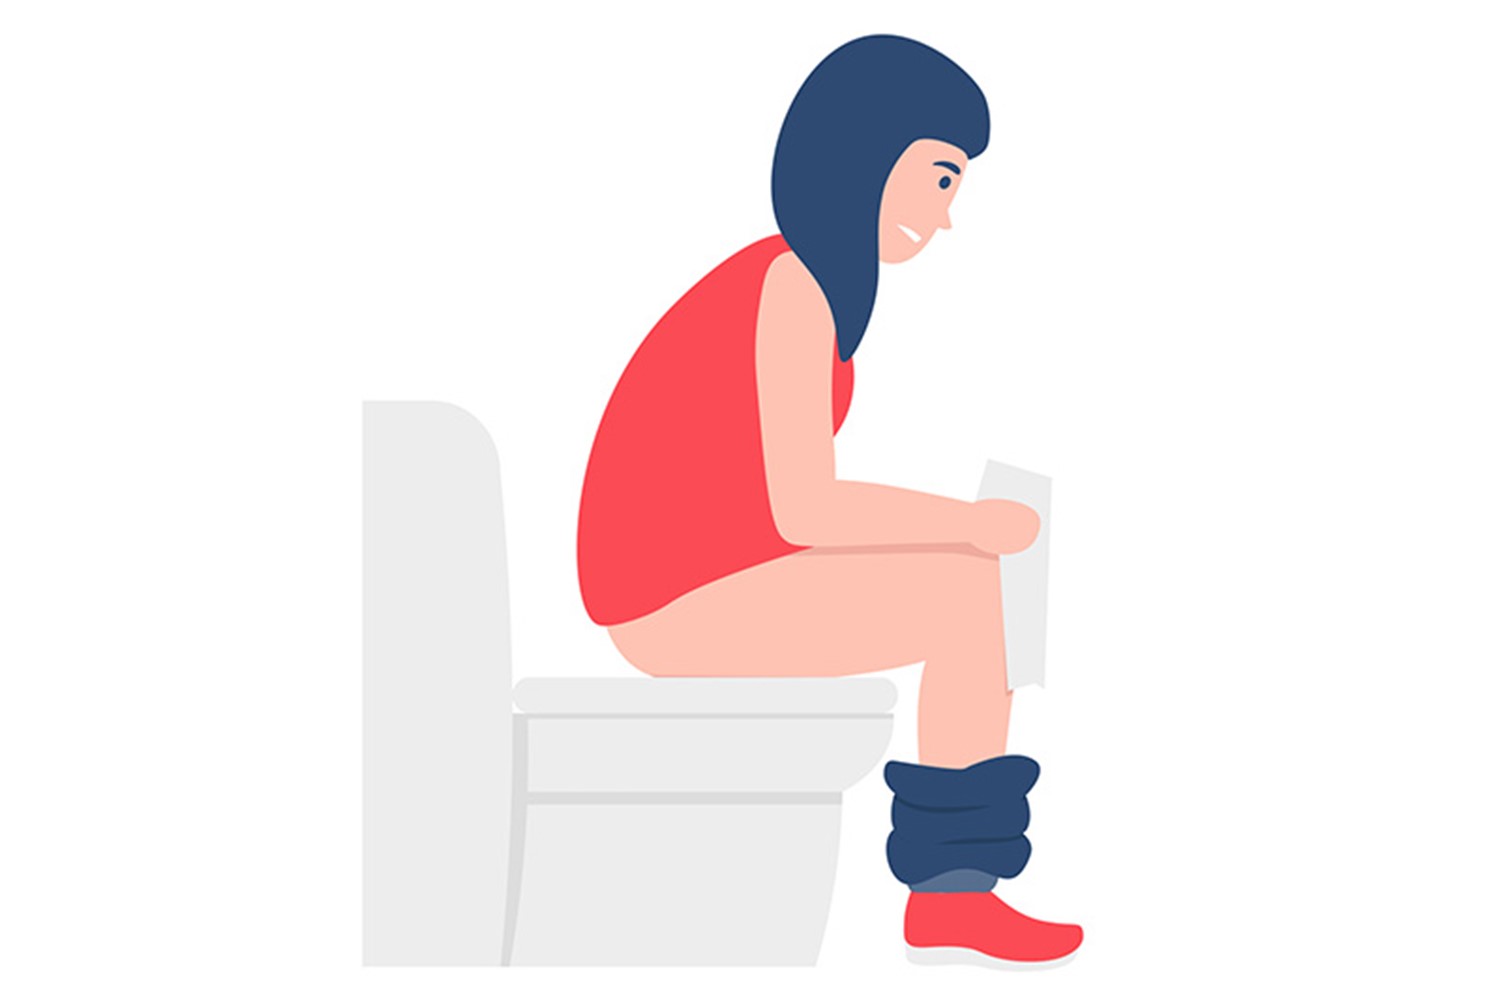 desenho de perfil de uma menina sentada no vaso sanitário, segurando um rolo de papel higiênico